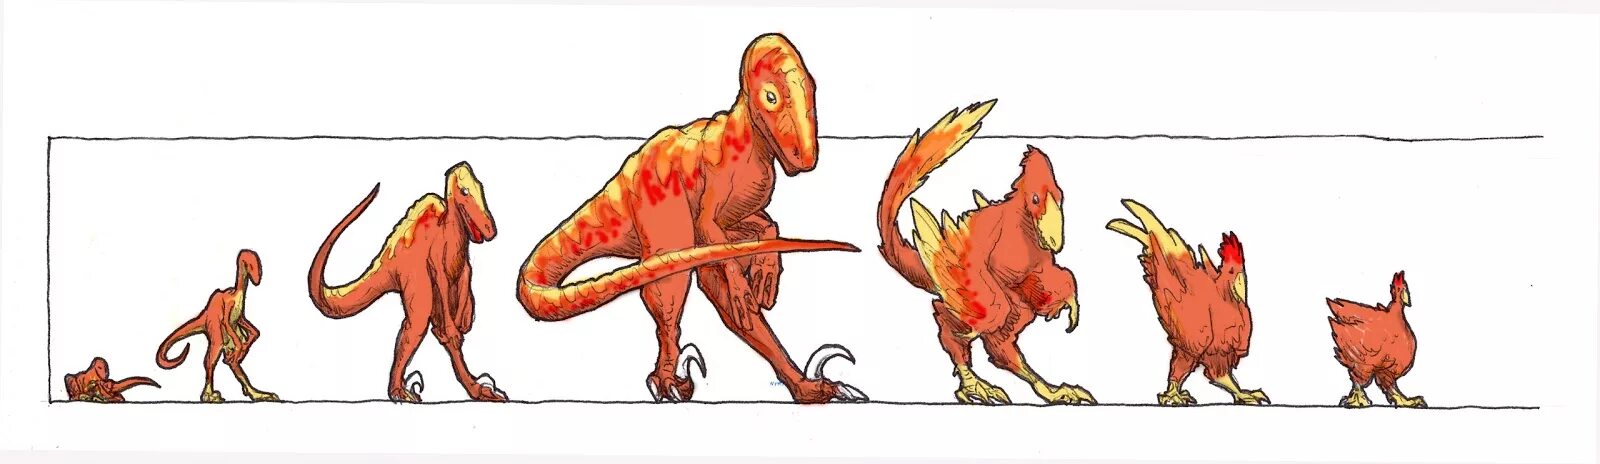 Тиранозавр курица Эволюция. Тираннозавр предок курицы. Курица потомок динозавров. Джек Хорнер Курозавр. Ближайший родственник динозавра